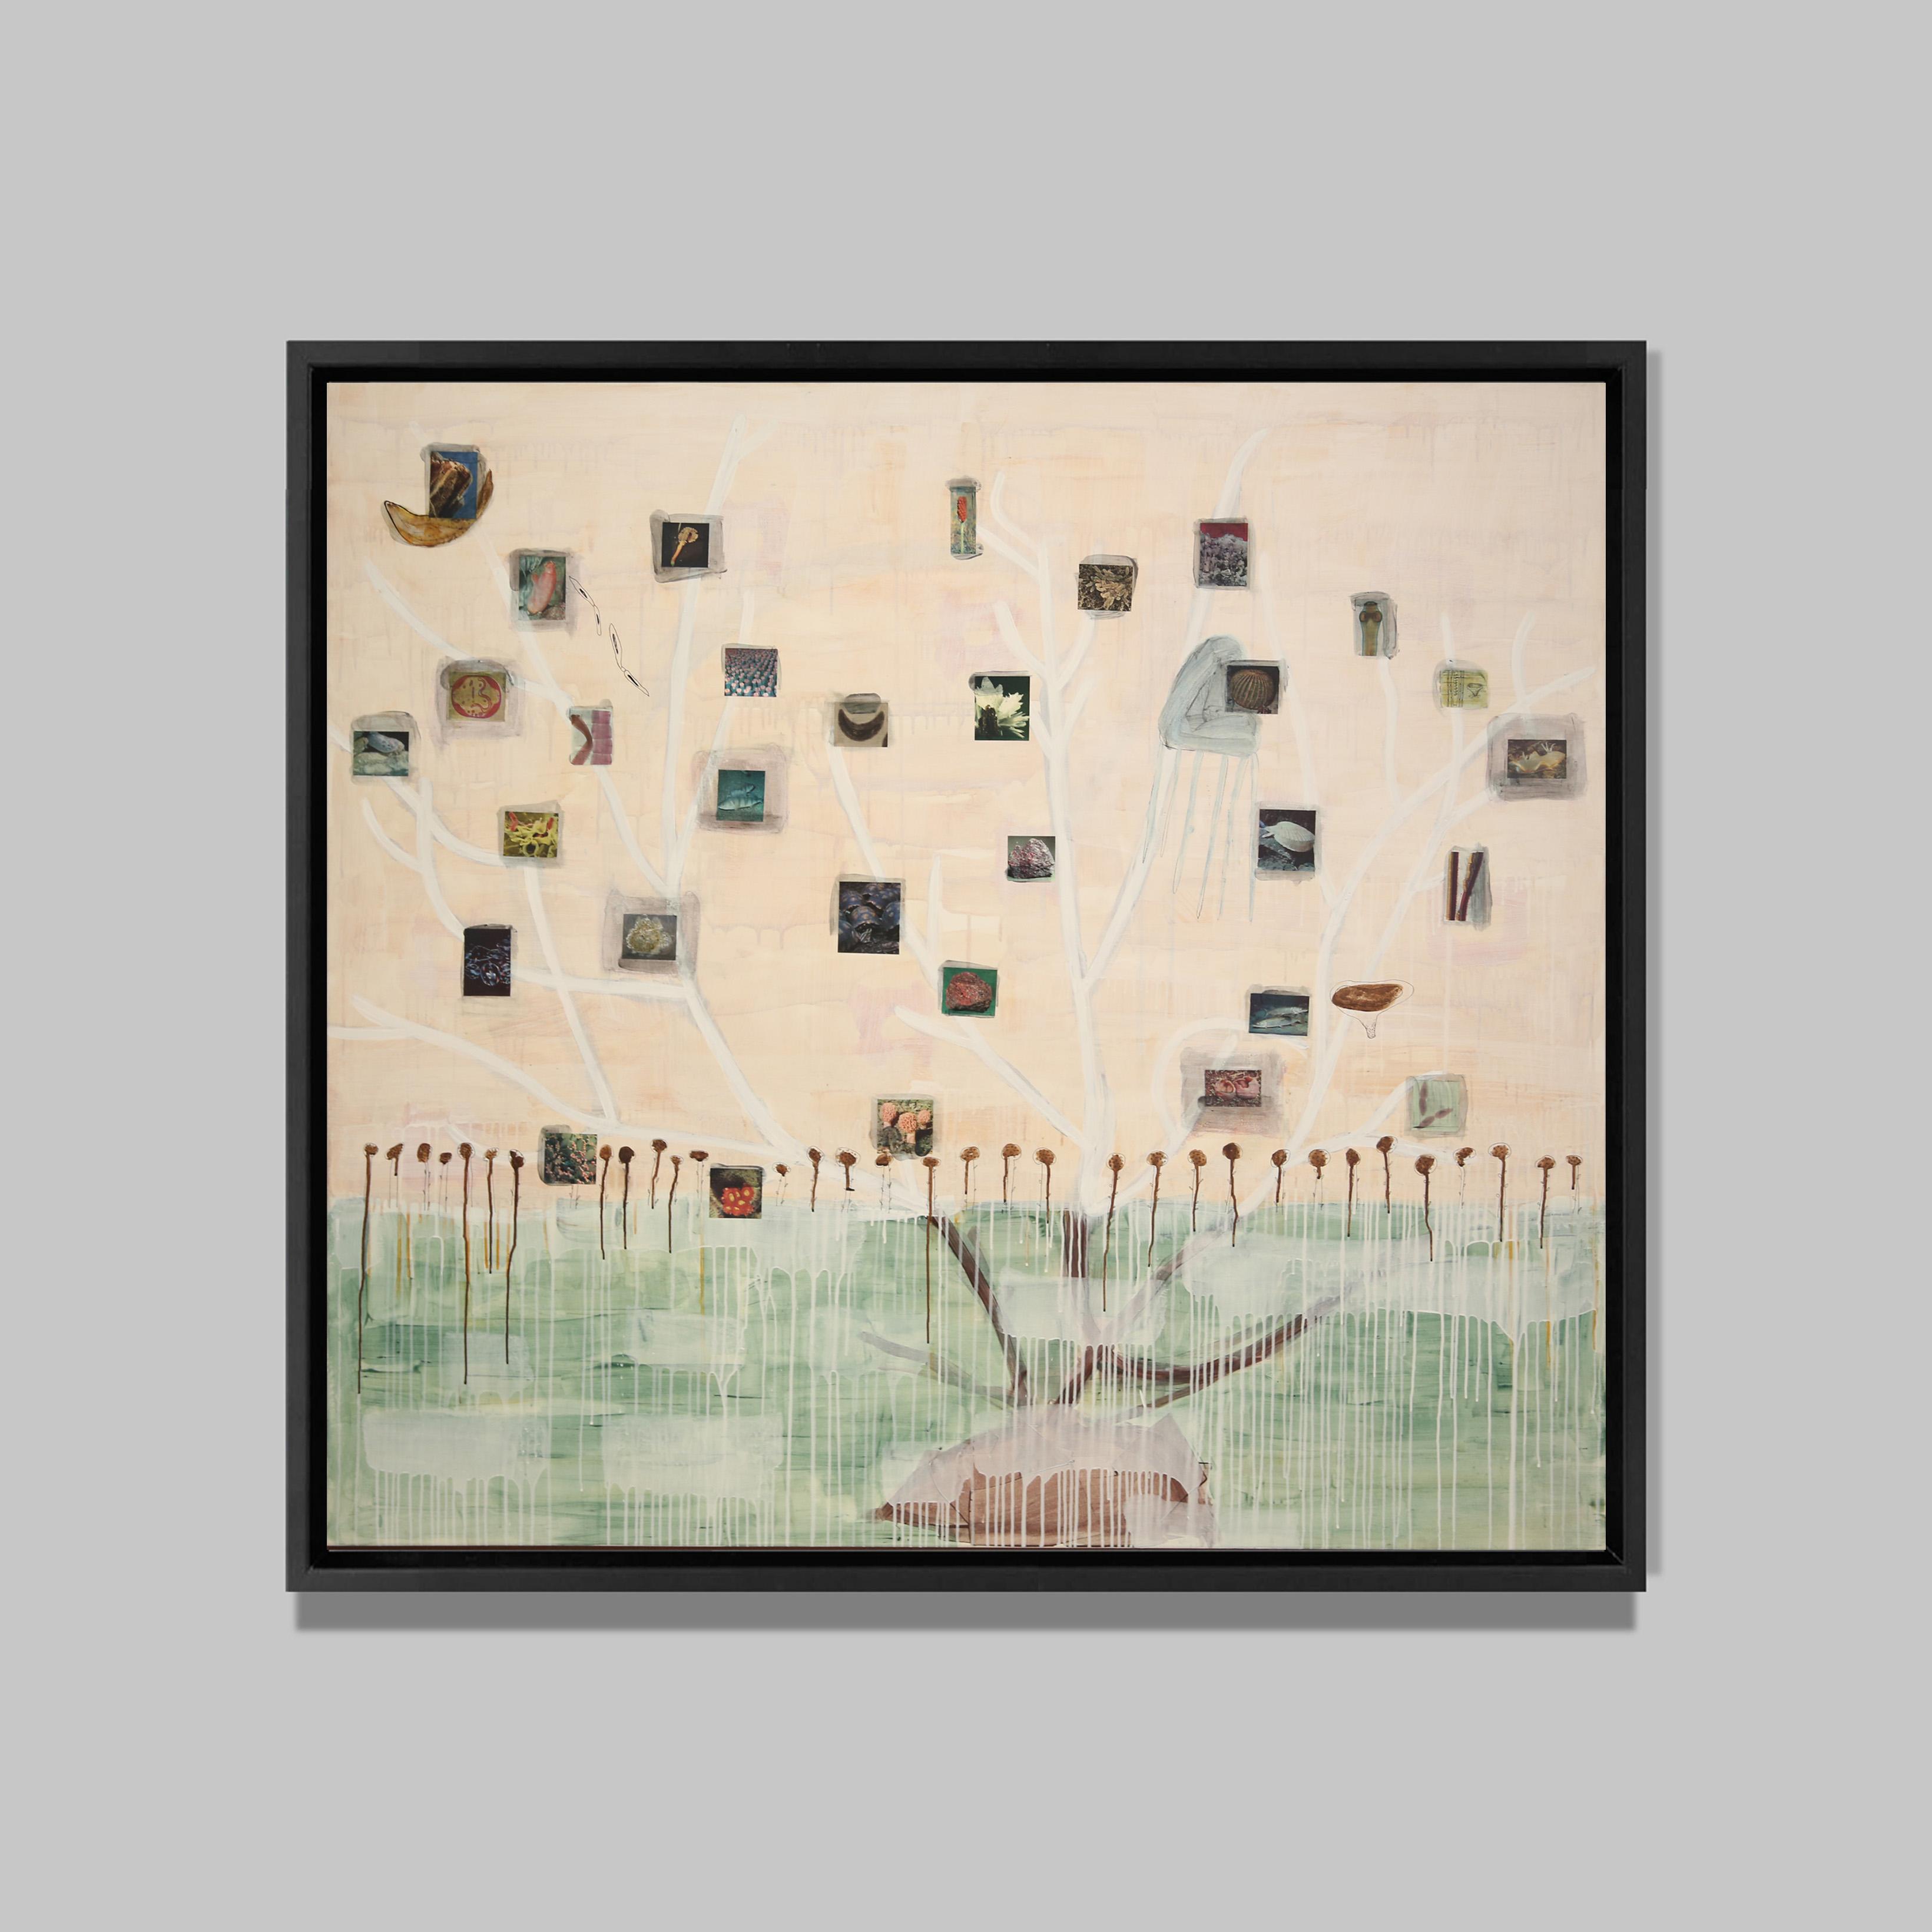 Micro Cosmos, 2015
Acrylique et collages sur toile
156 x 174 cm